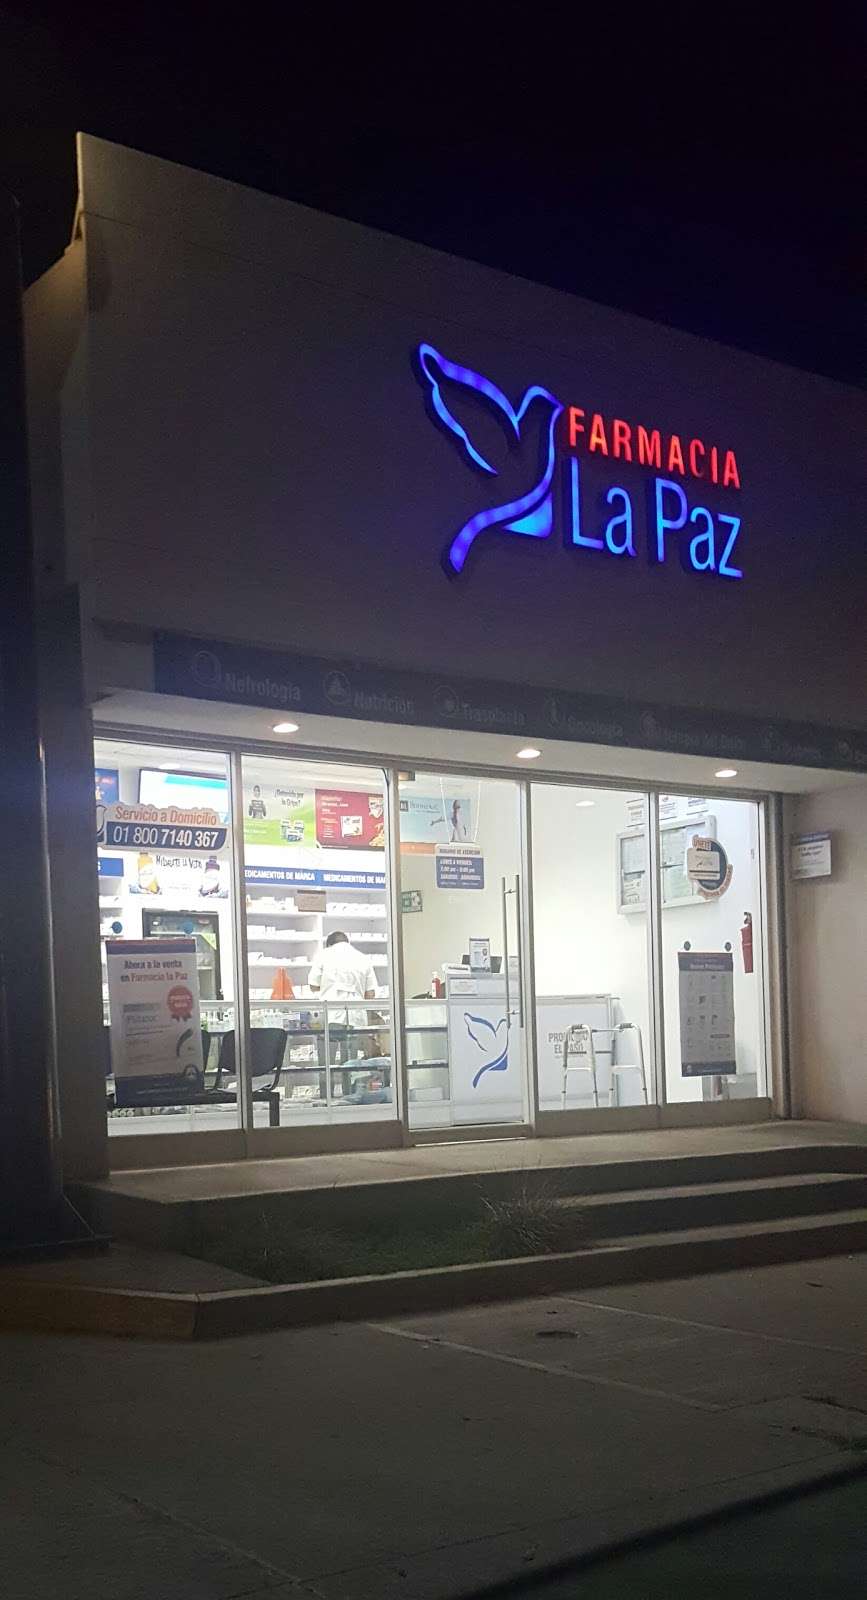 Farmacia La Paz | Av. Paseo, Av Rio Tijuana 10830, Zona Urbana Rio Tijuana, 22010 Tijuana, B.C., Mexico | Phone: 800 714 0367